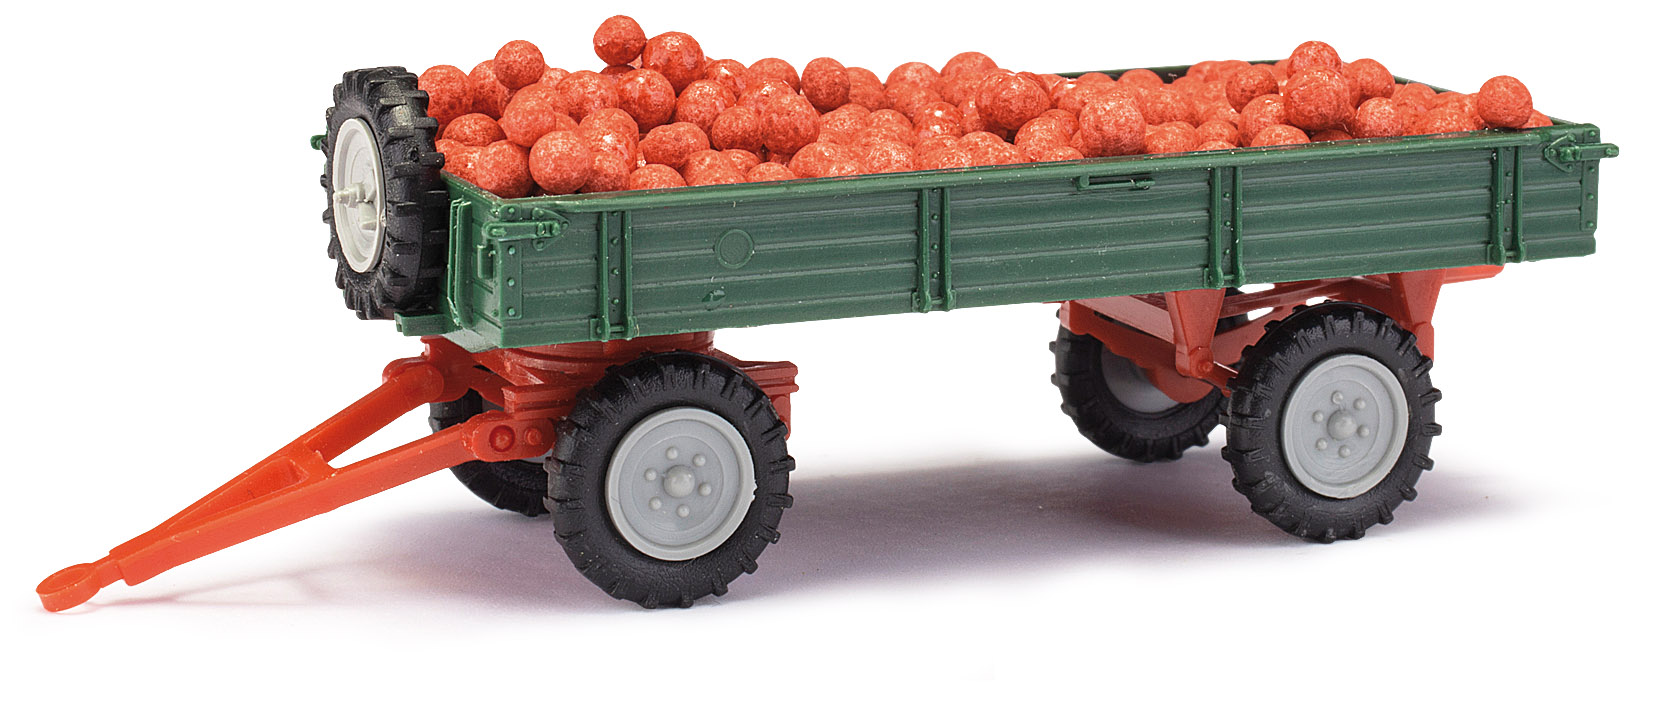 Mehlhose‚Remorque agricole sur pneus‚ chargée de pommes